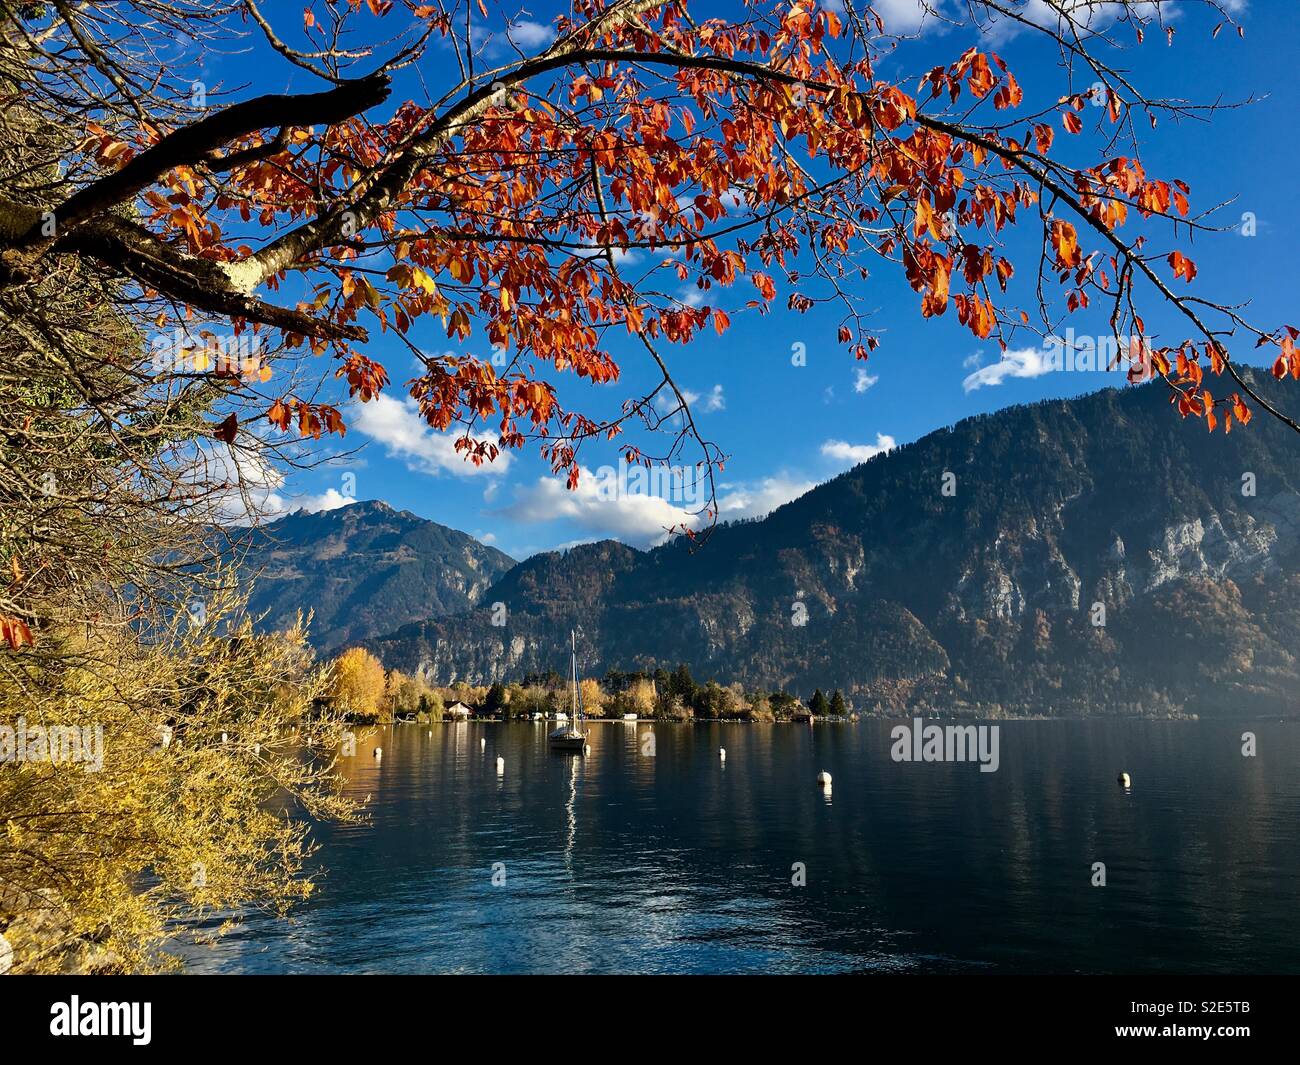 Autumn on lake Thun near Unterseen Interlaken, Bernese alps, Switzerland. Stock Photo